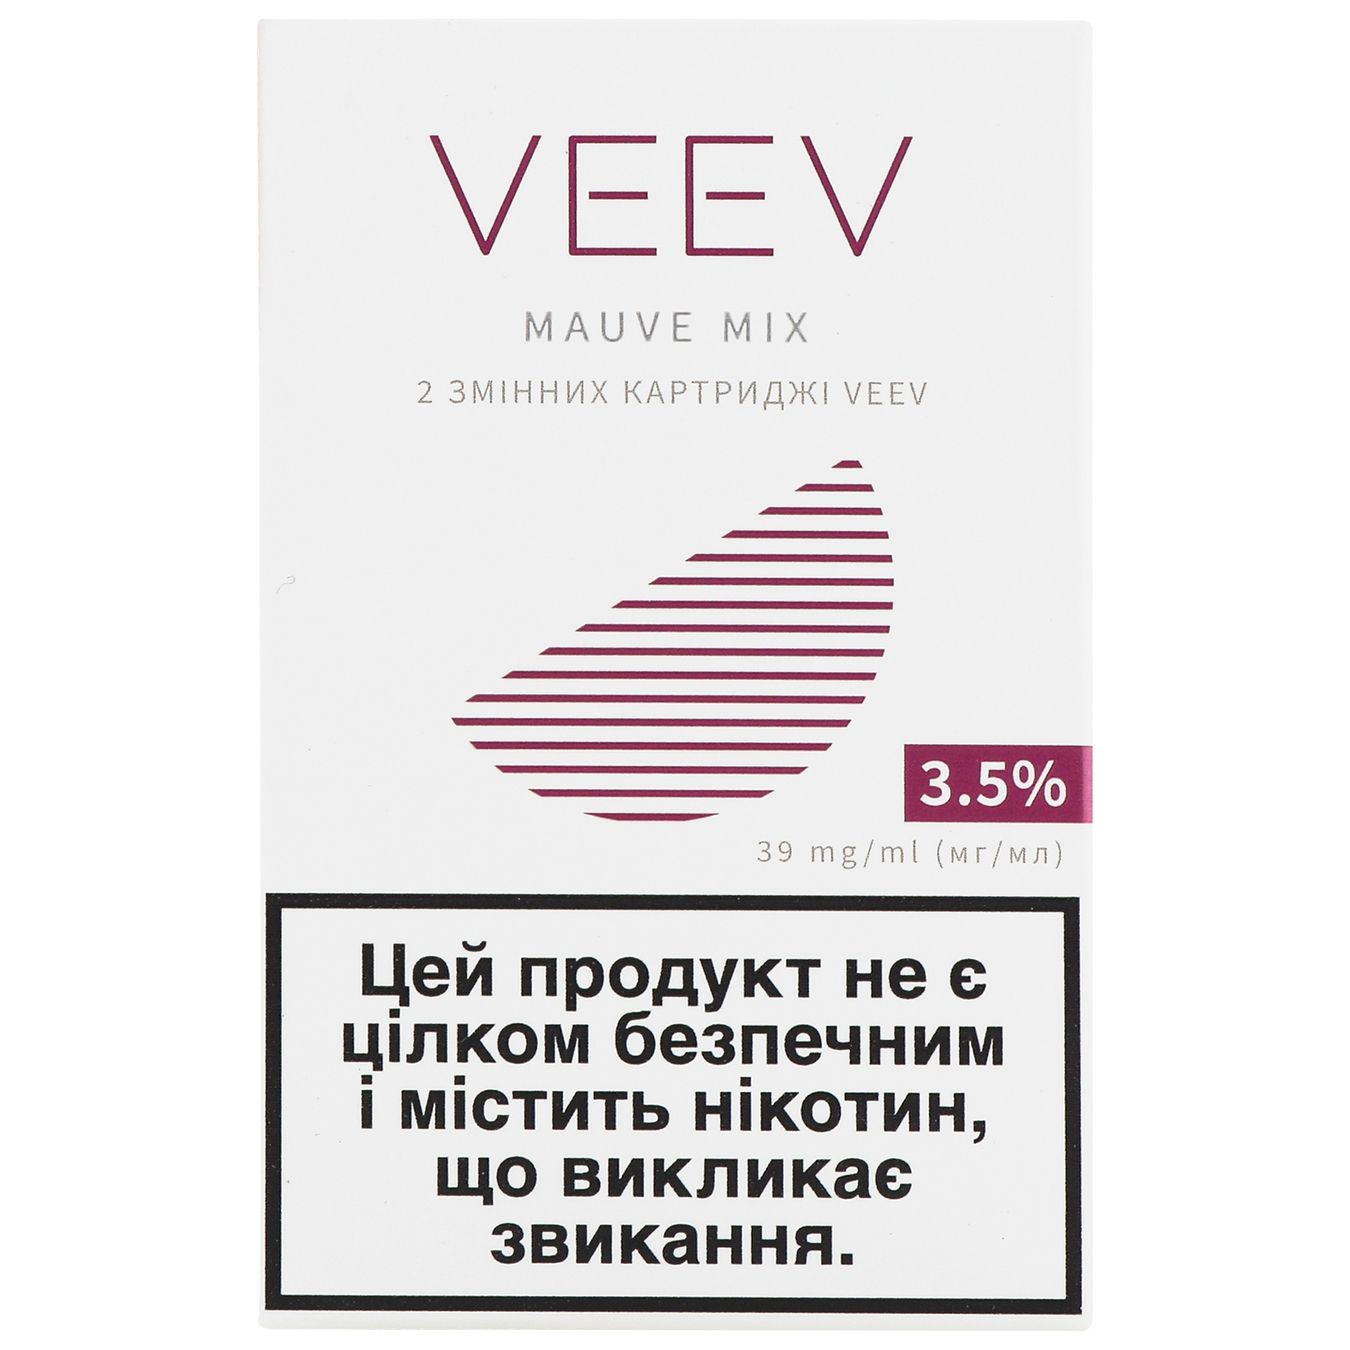 Картридж сменный Veev Mauve mix 3,5% (цена указана без акциза)